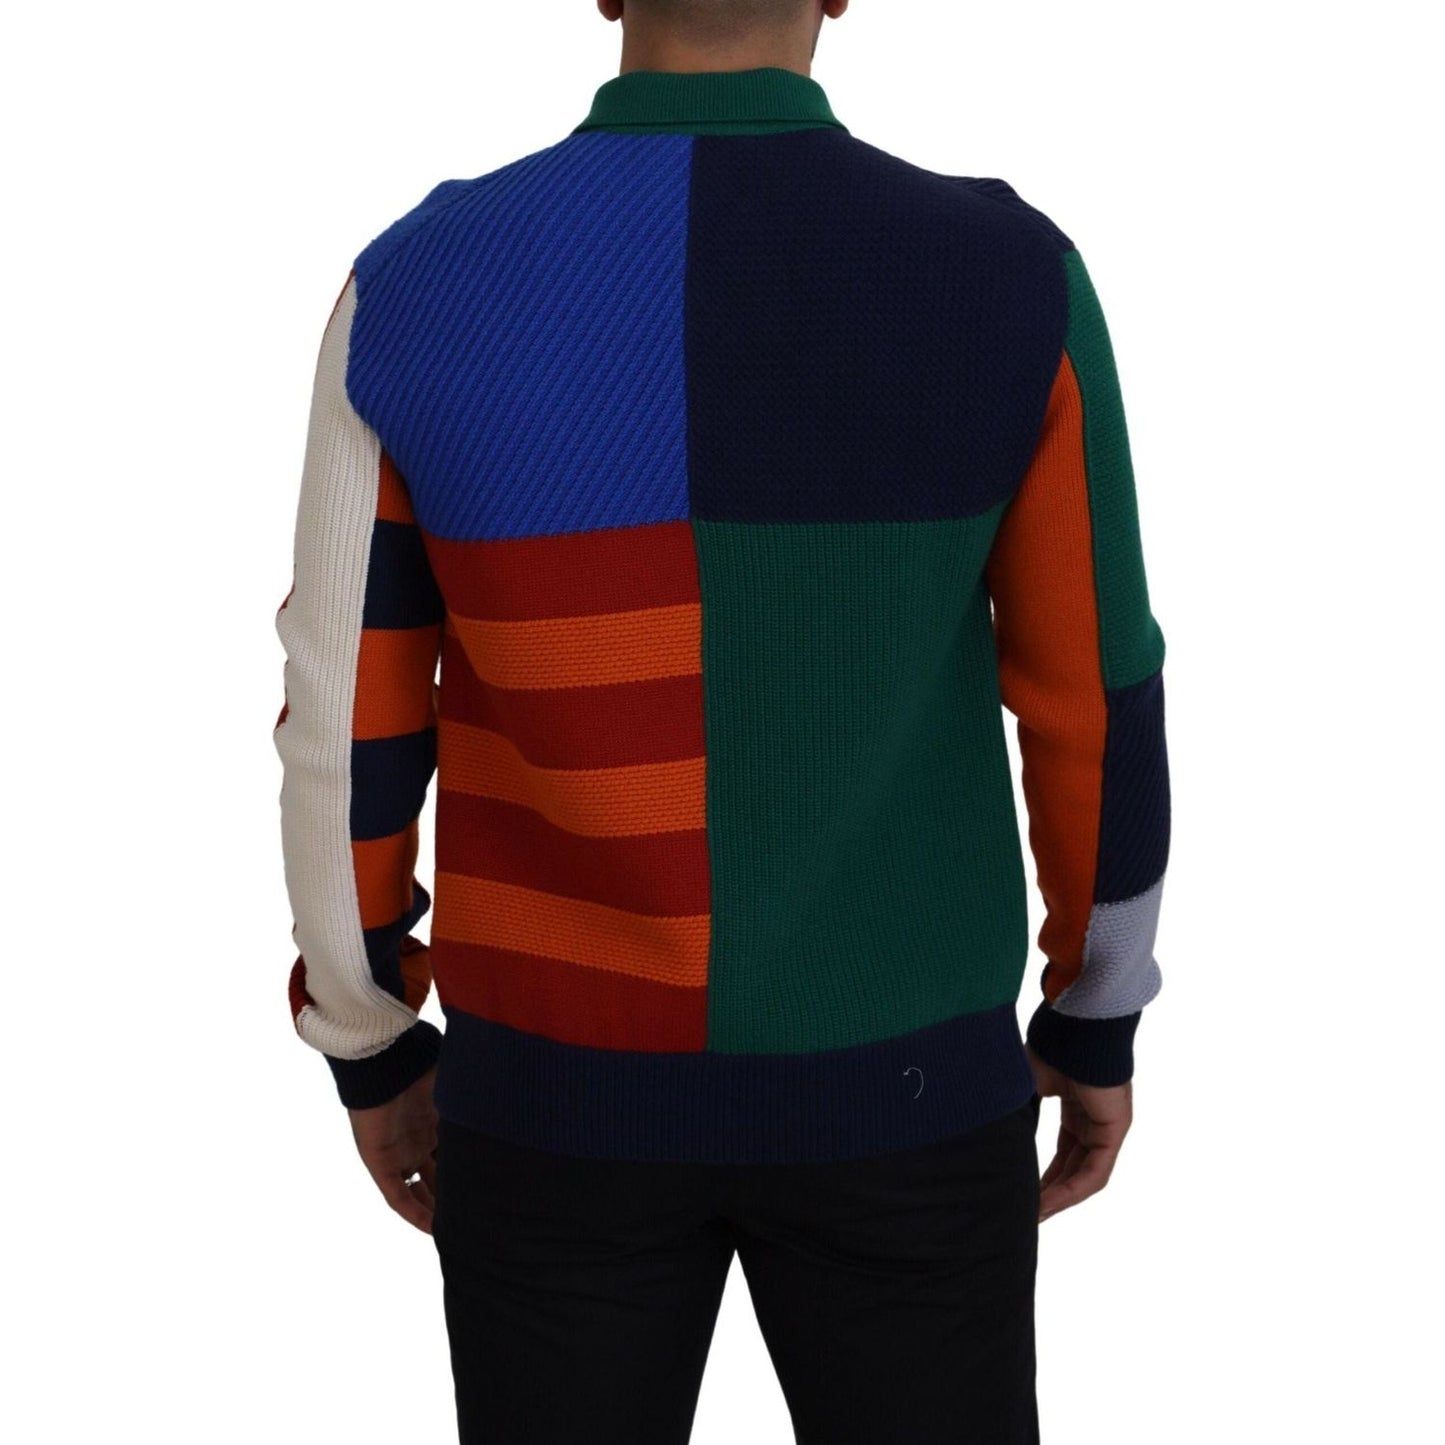 Dolce & Gabbana Pullover Sweater in Multicolor Stripes multicolor-stripes-wool-pullover-sweater